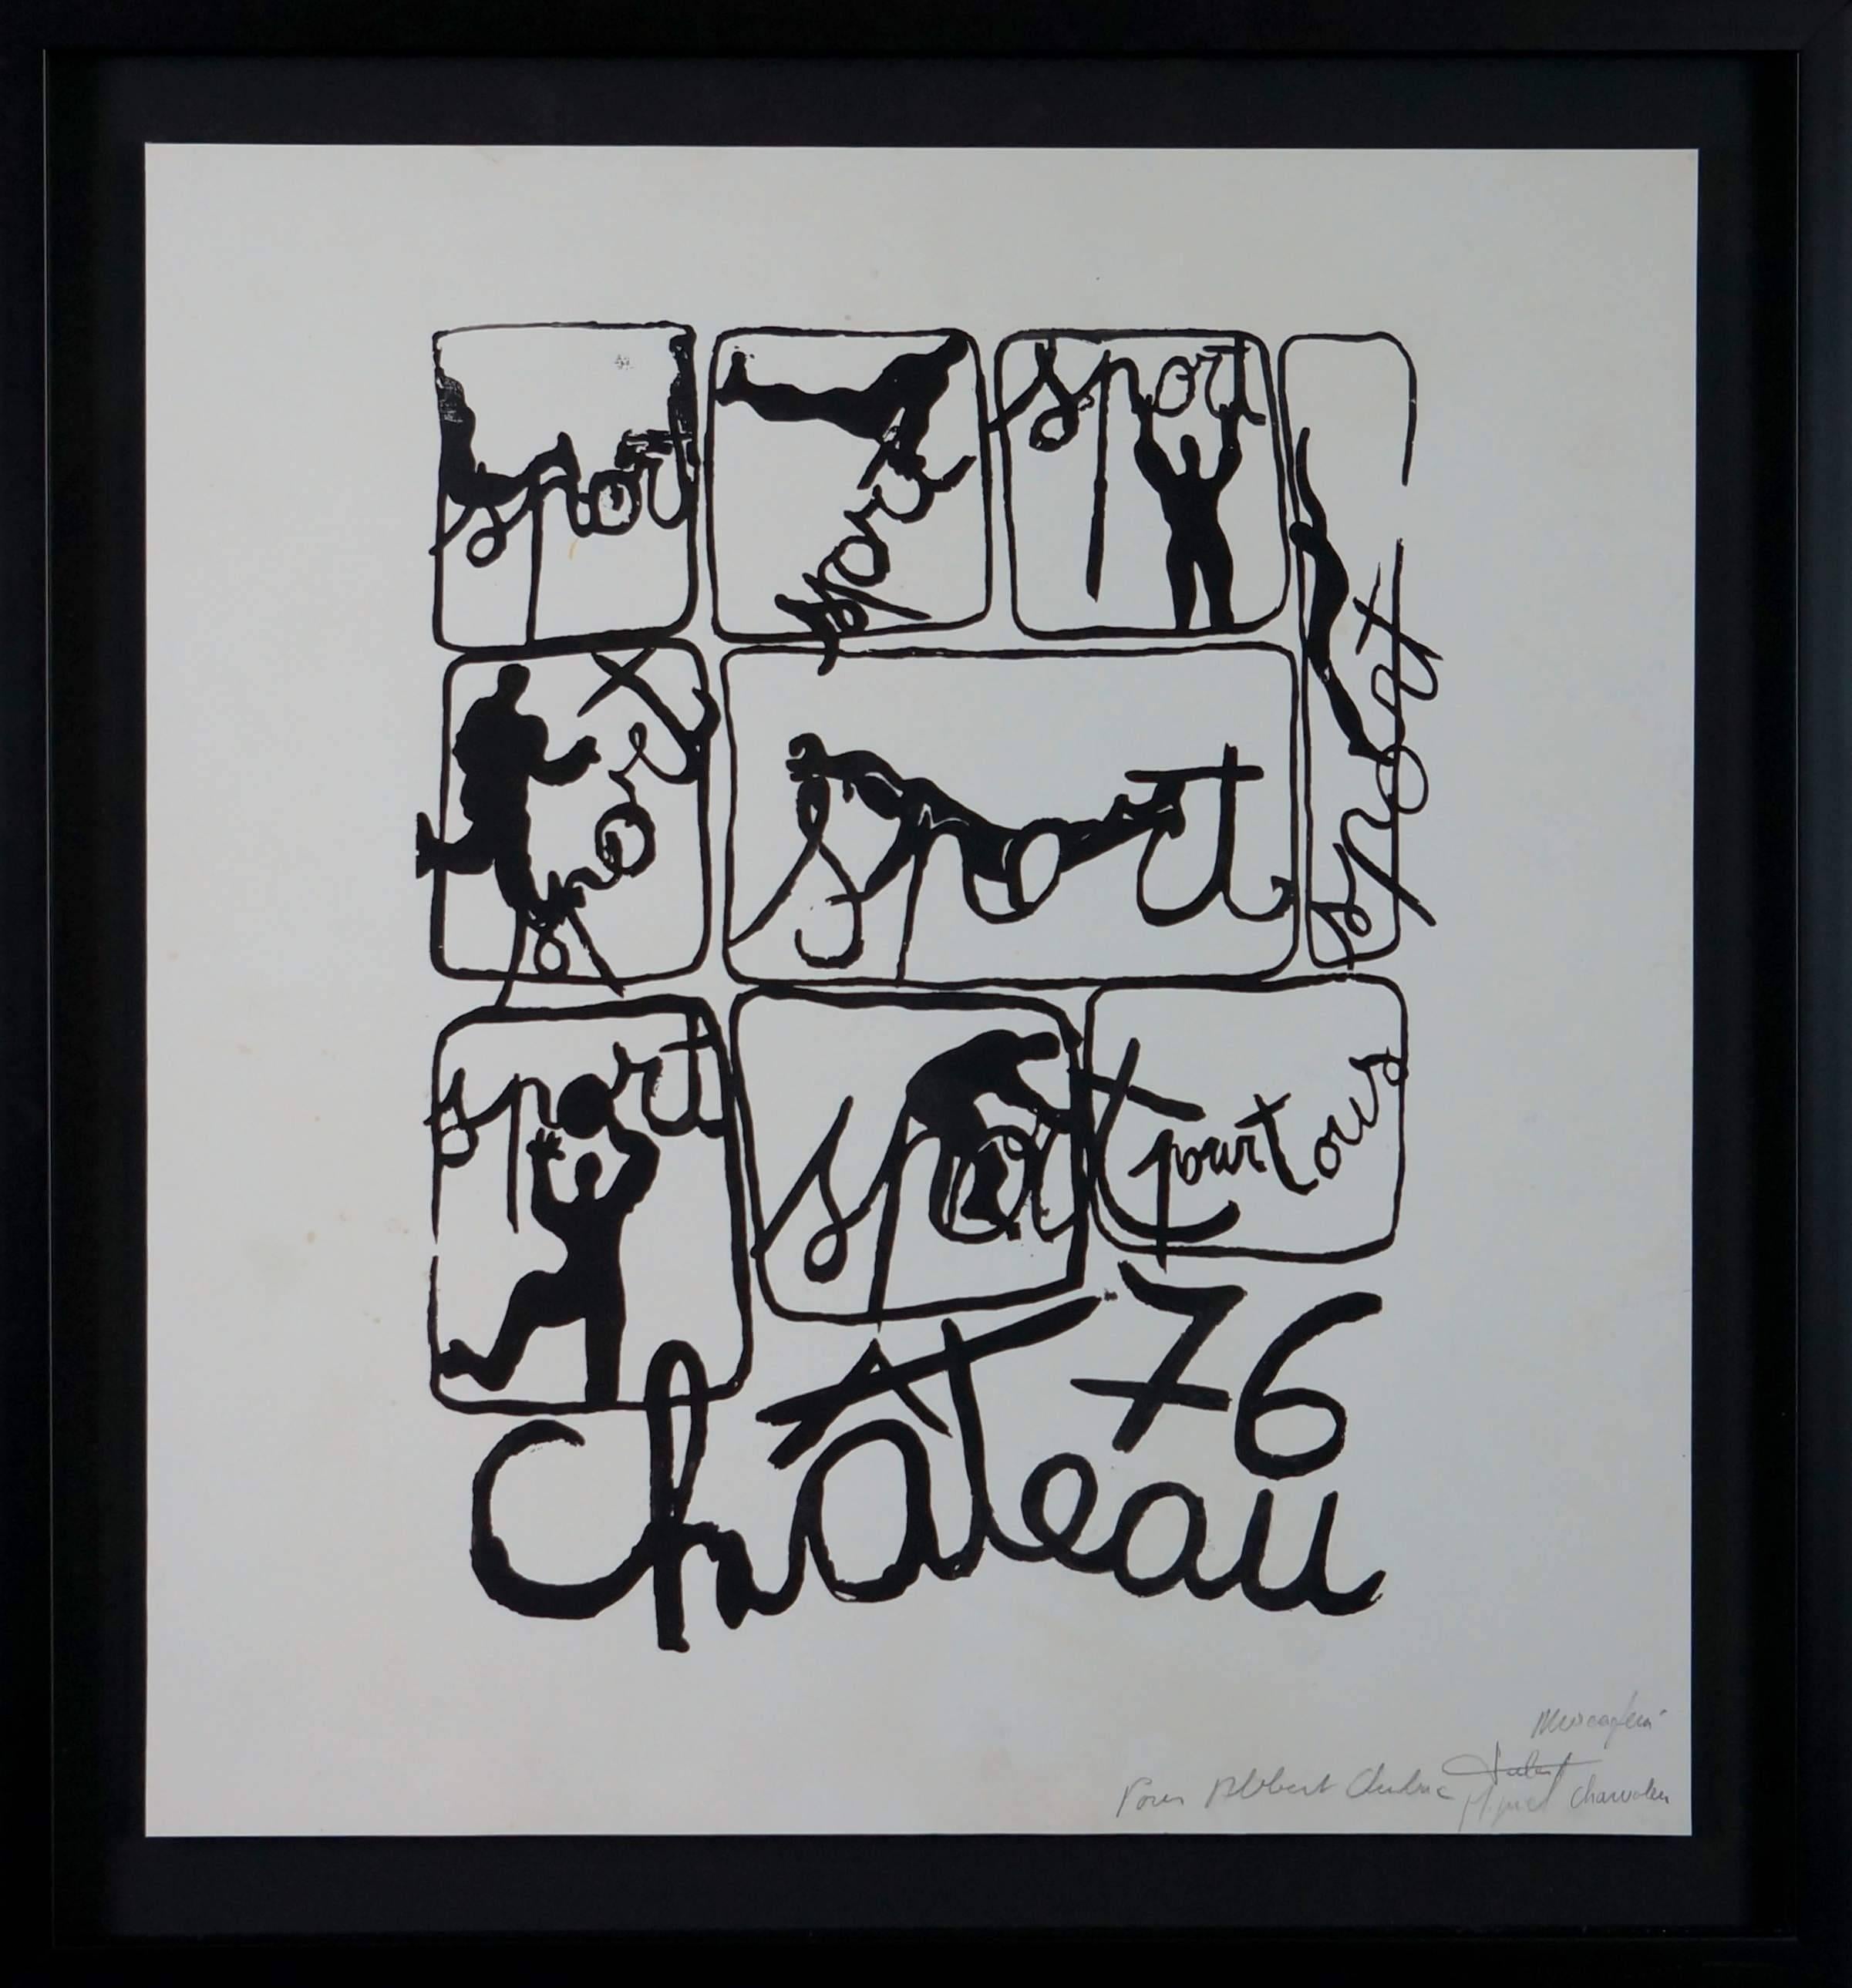 Hommage A Chubac, 1976 - Tinte auf Papier, 64x59 cm, gerahmt